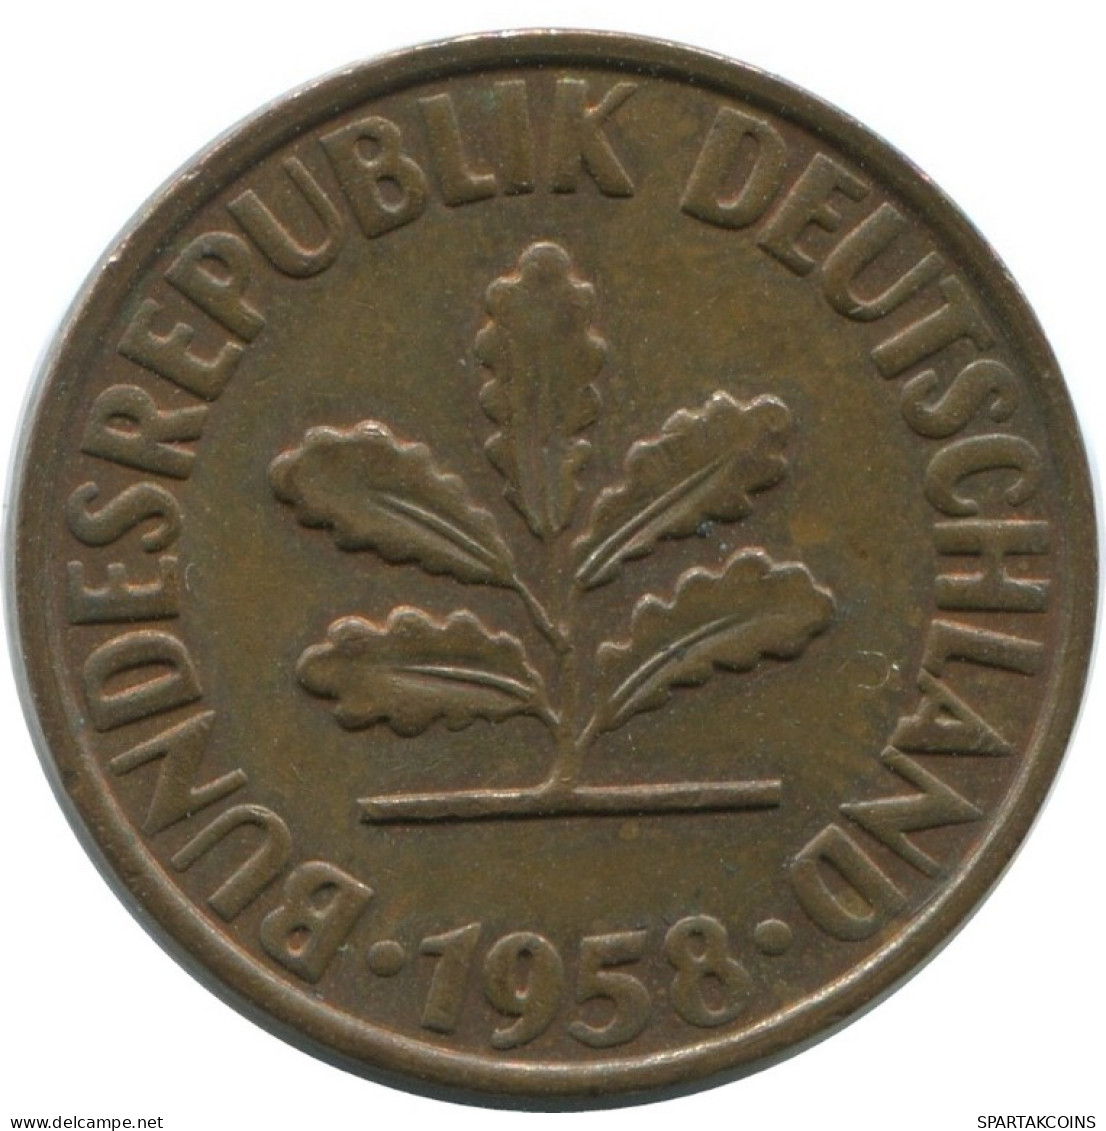 2 PFENNIG 1958 G WEST & UNIFIED GERMANY Coin #AD859.9.U.A - 2 Pfennig